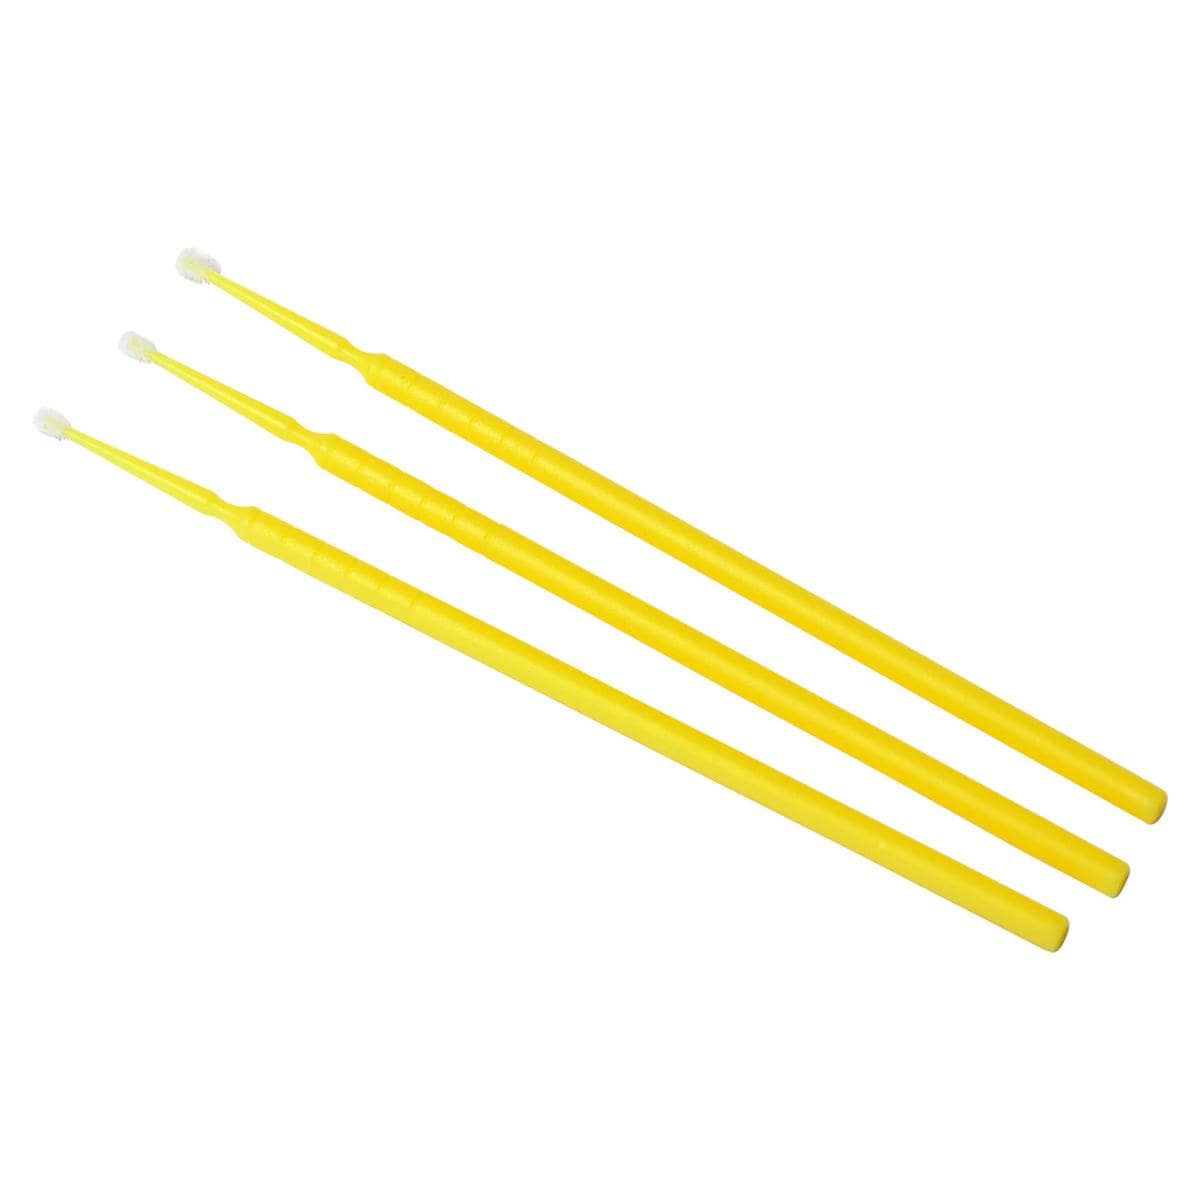 HS-Roundtips HS8 - Nachfüllpackung - Ø 1,5 mm, fein (gelb), Länge 8,6 cm, Packung 100 Stück